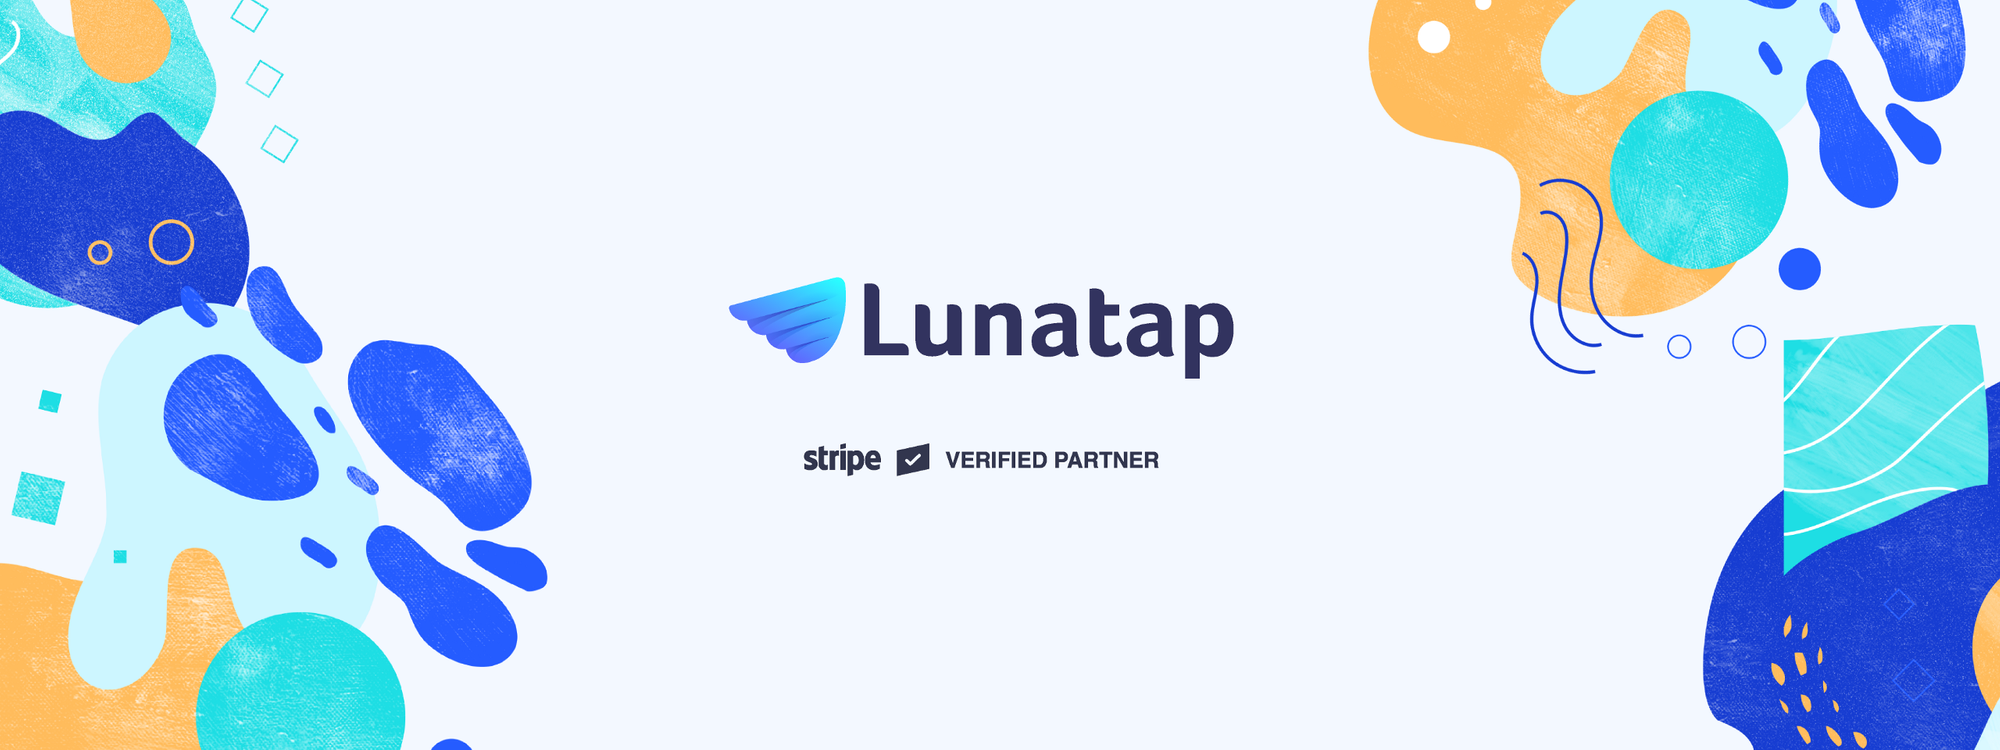 Introducing Lunatap